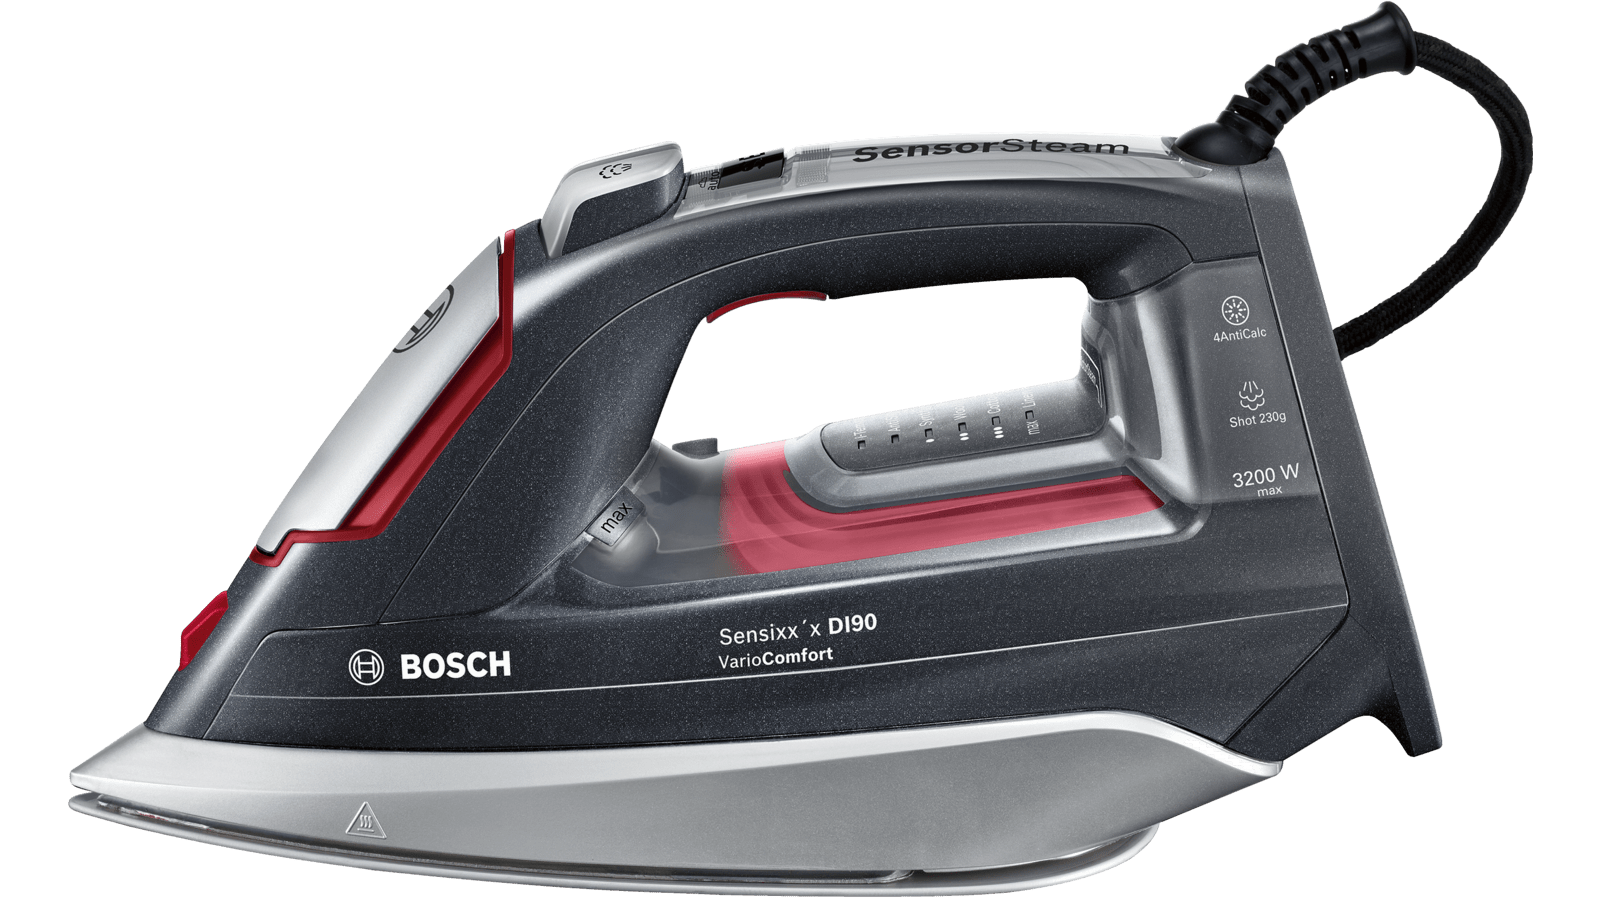 Comprar Plancha Bosch Tdi953022v 3200w barata con envío rápido